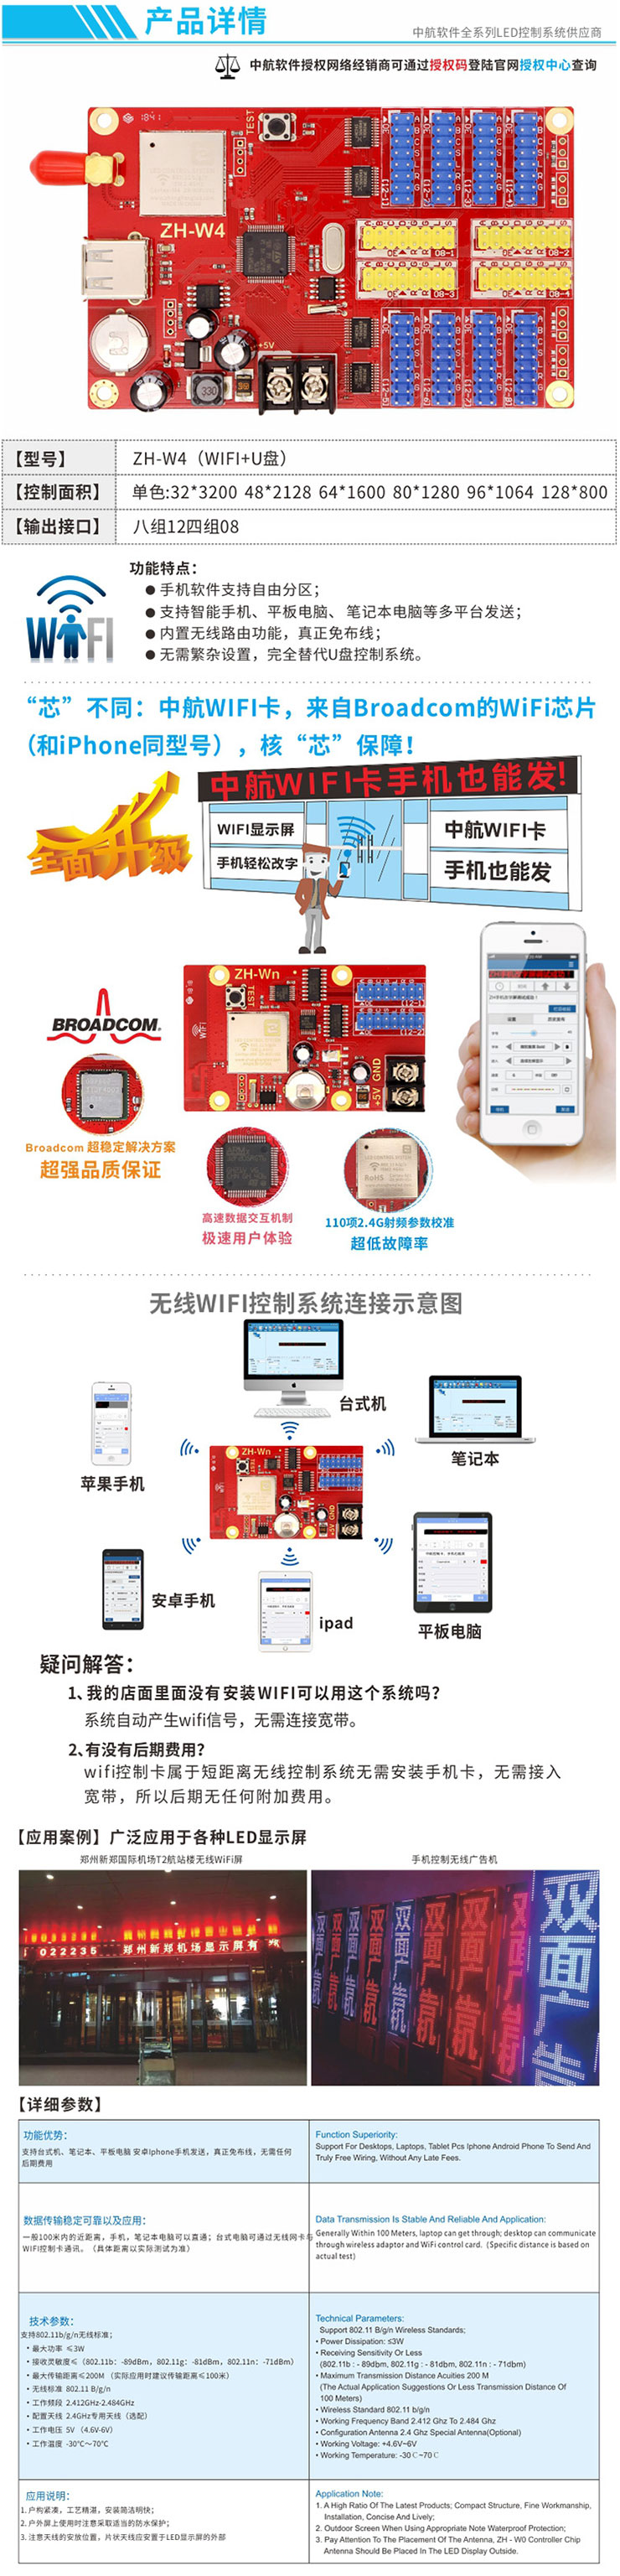 中航控制卡ZH-W4-手机无线WIFI控制卡-U盘LED显示屏控制卡-中航W4-淘宝网